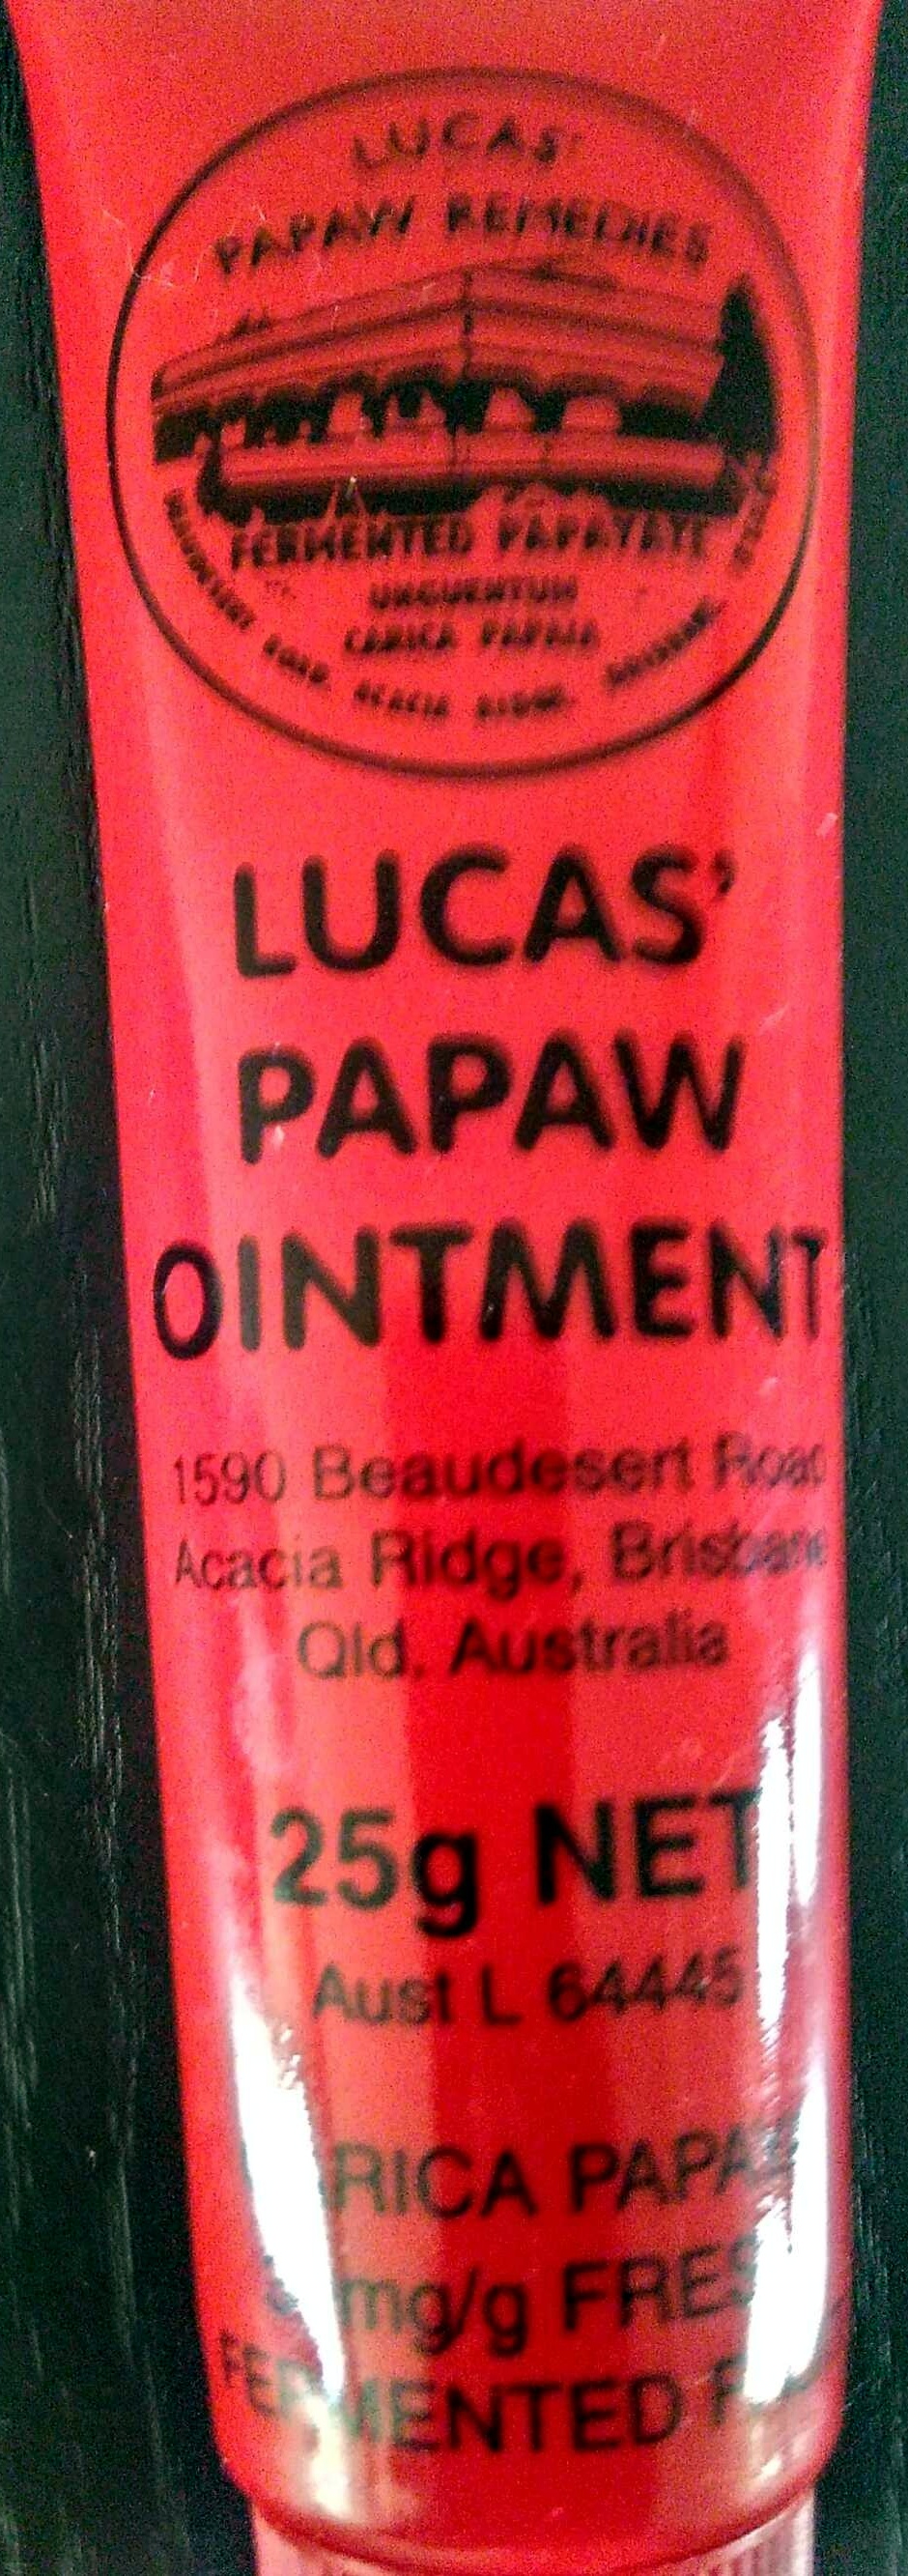 LUCAS' PAPAW OINTMENT - Produkt - en